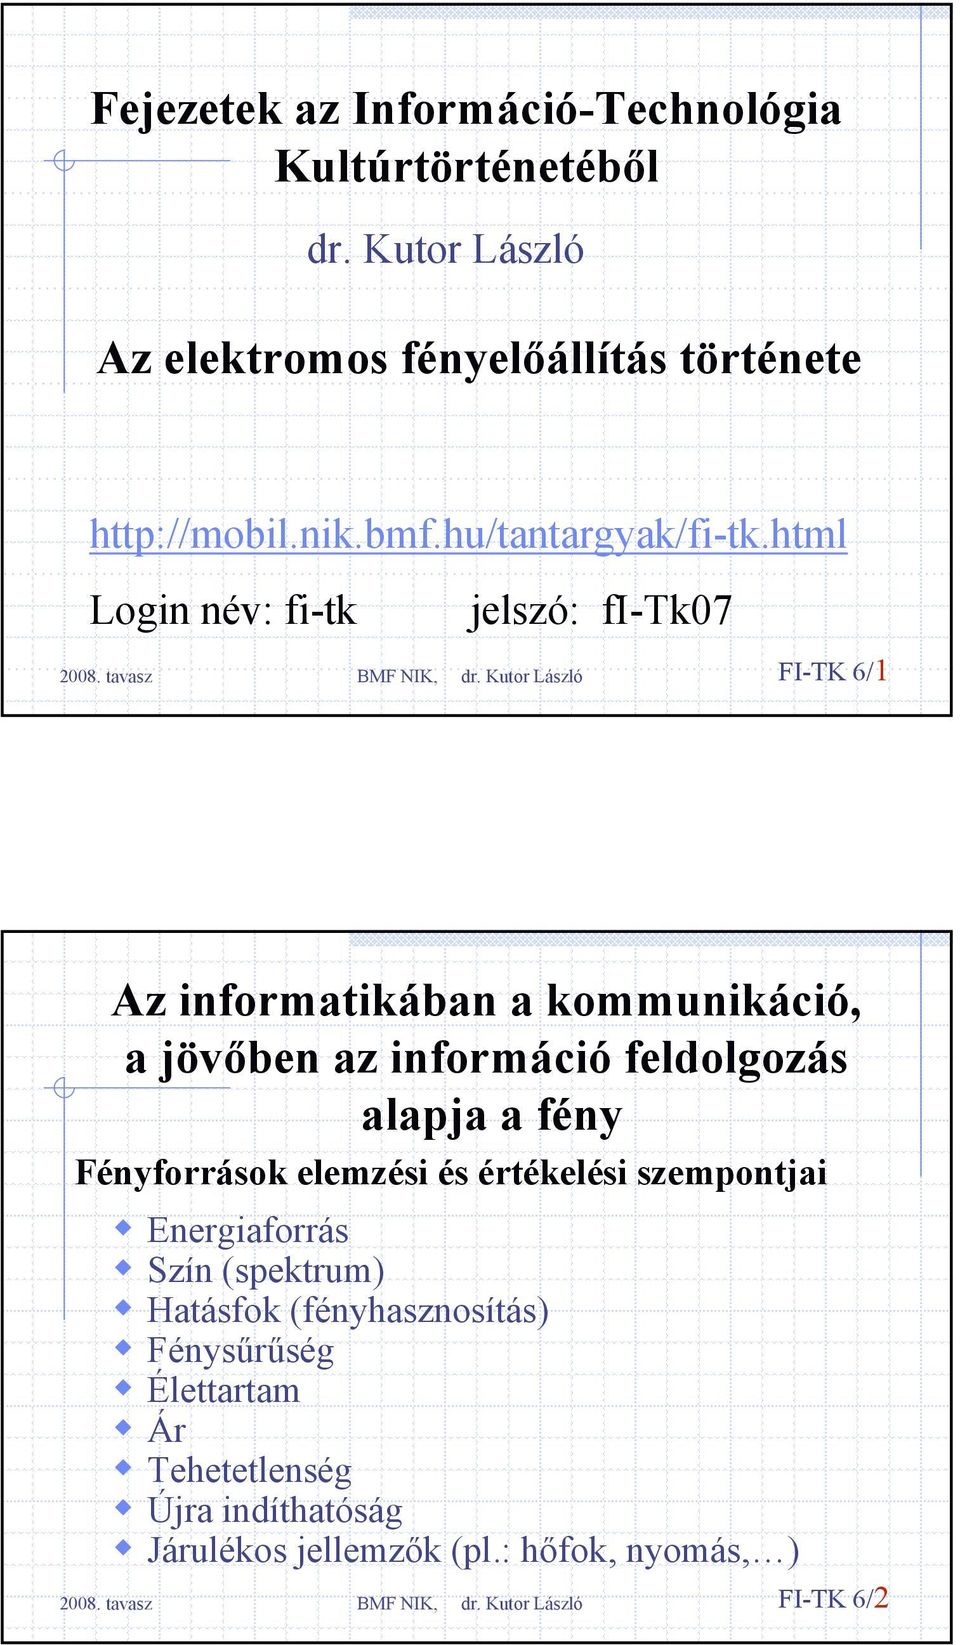 html Login név: fi-tk jelszó: fi-tk07 FI-TK 6/1 Az informatikában a kommunikáció, a jövőben az információ feldolgozás alapja